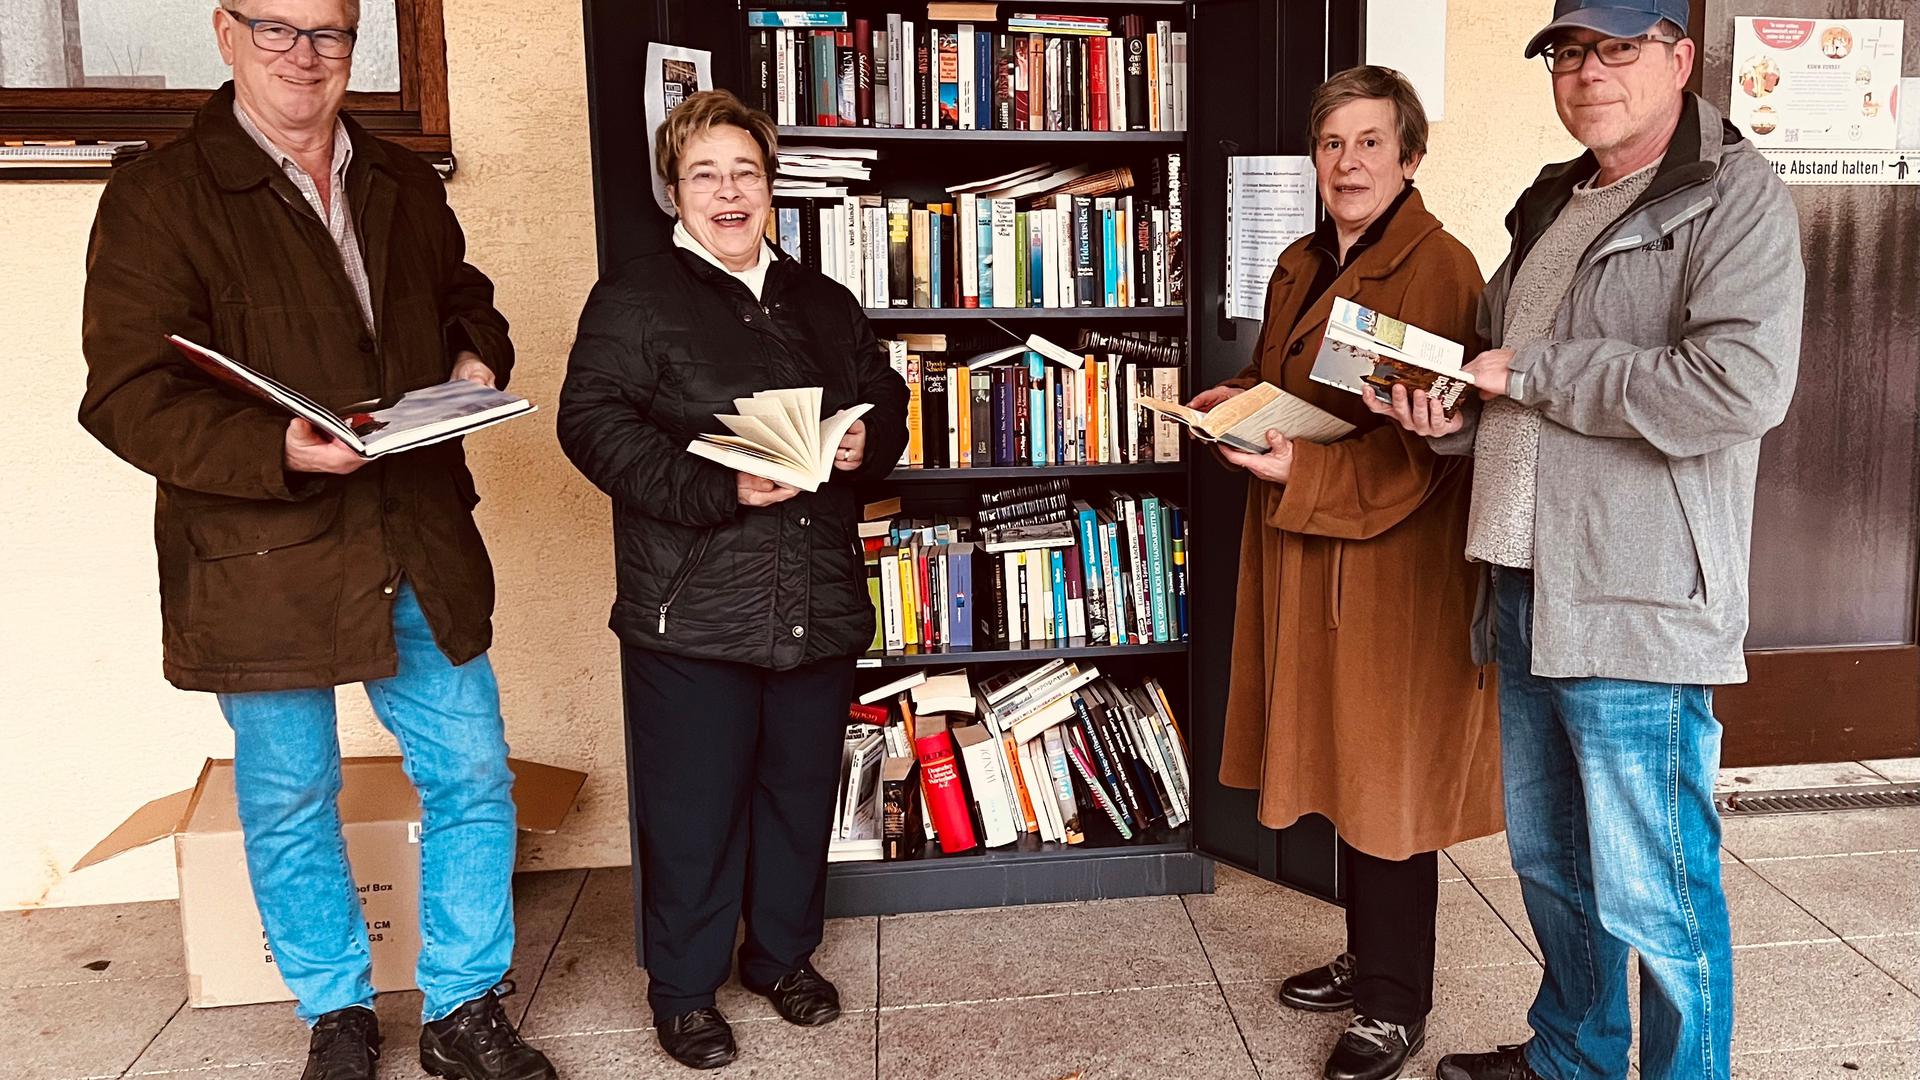 Xaver und Rosemarie Braxmeier, Imogen Nabel und Hermann Josef Iven decken sich selbst gerne mit Literatur aus dem Geroldsauer Bücherschrank ein.